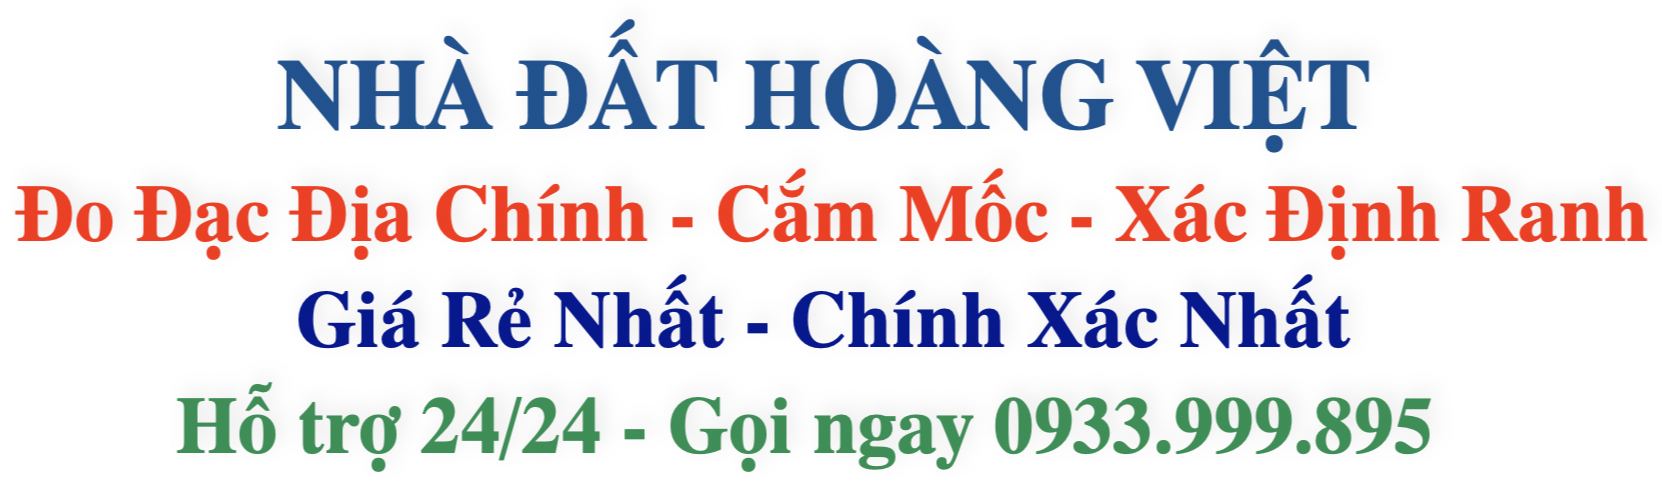 Dịch vụ đo đạc uy tín chất lượng tận tâm - Hoàng Việt